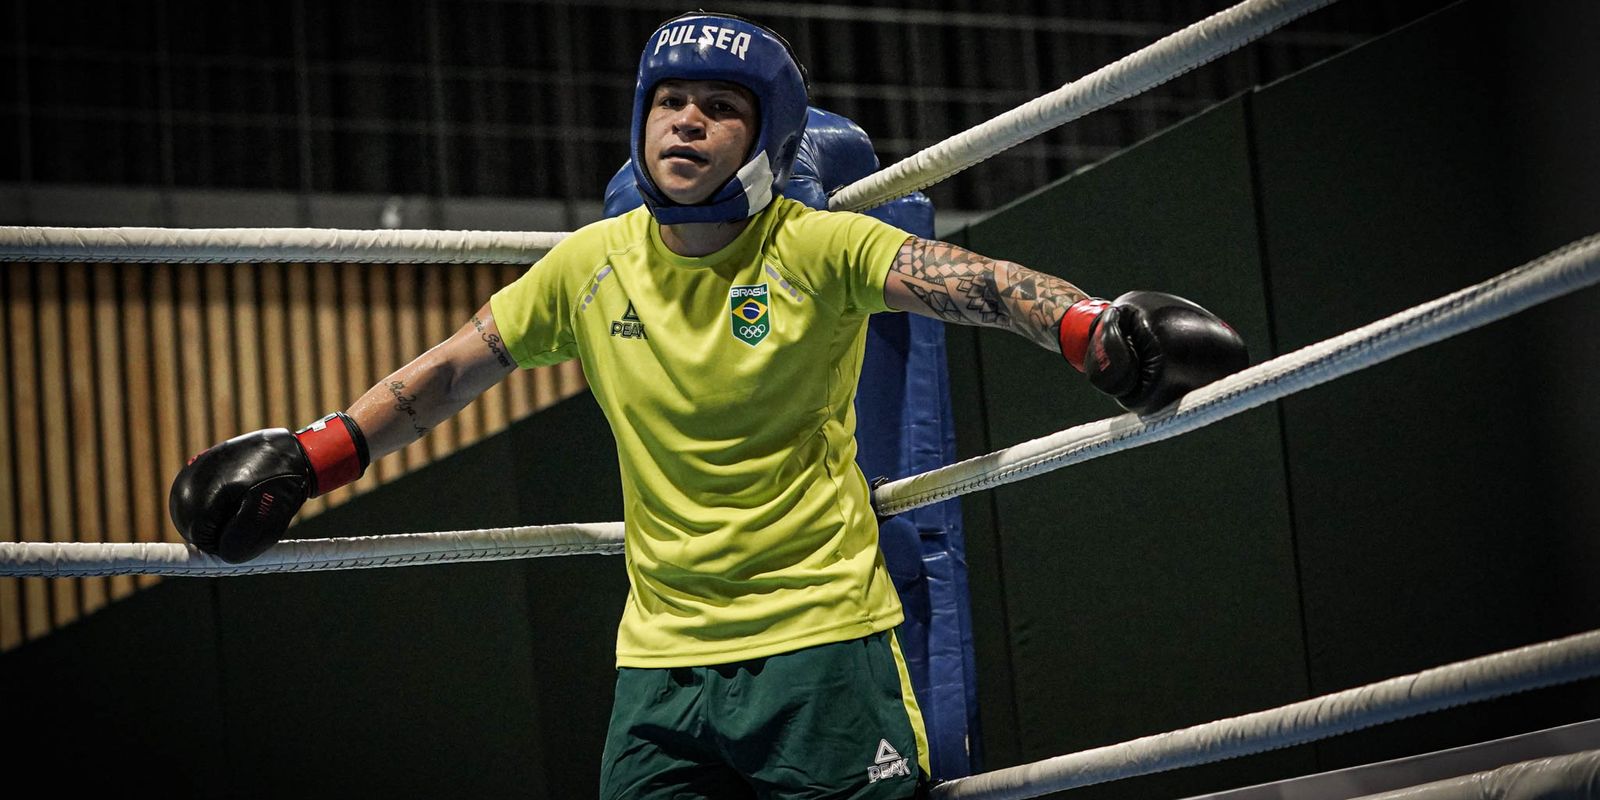 Atletas brasileiros estão preparados para os Jogos Olímpicos de Tóquio 2020